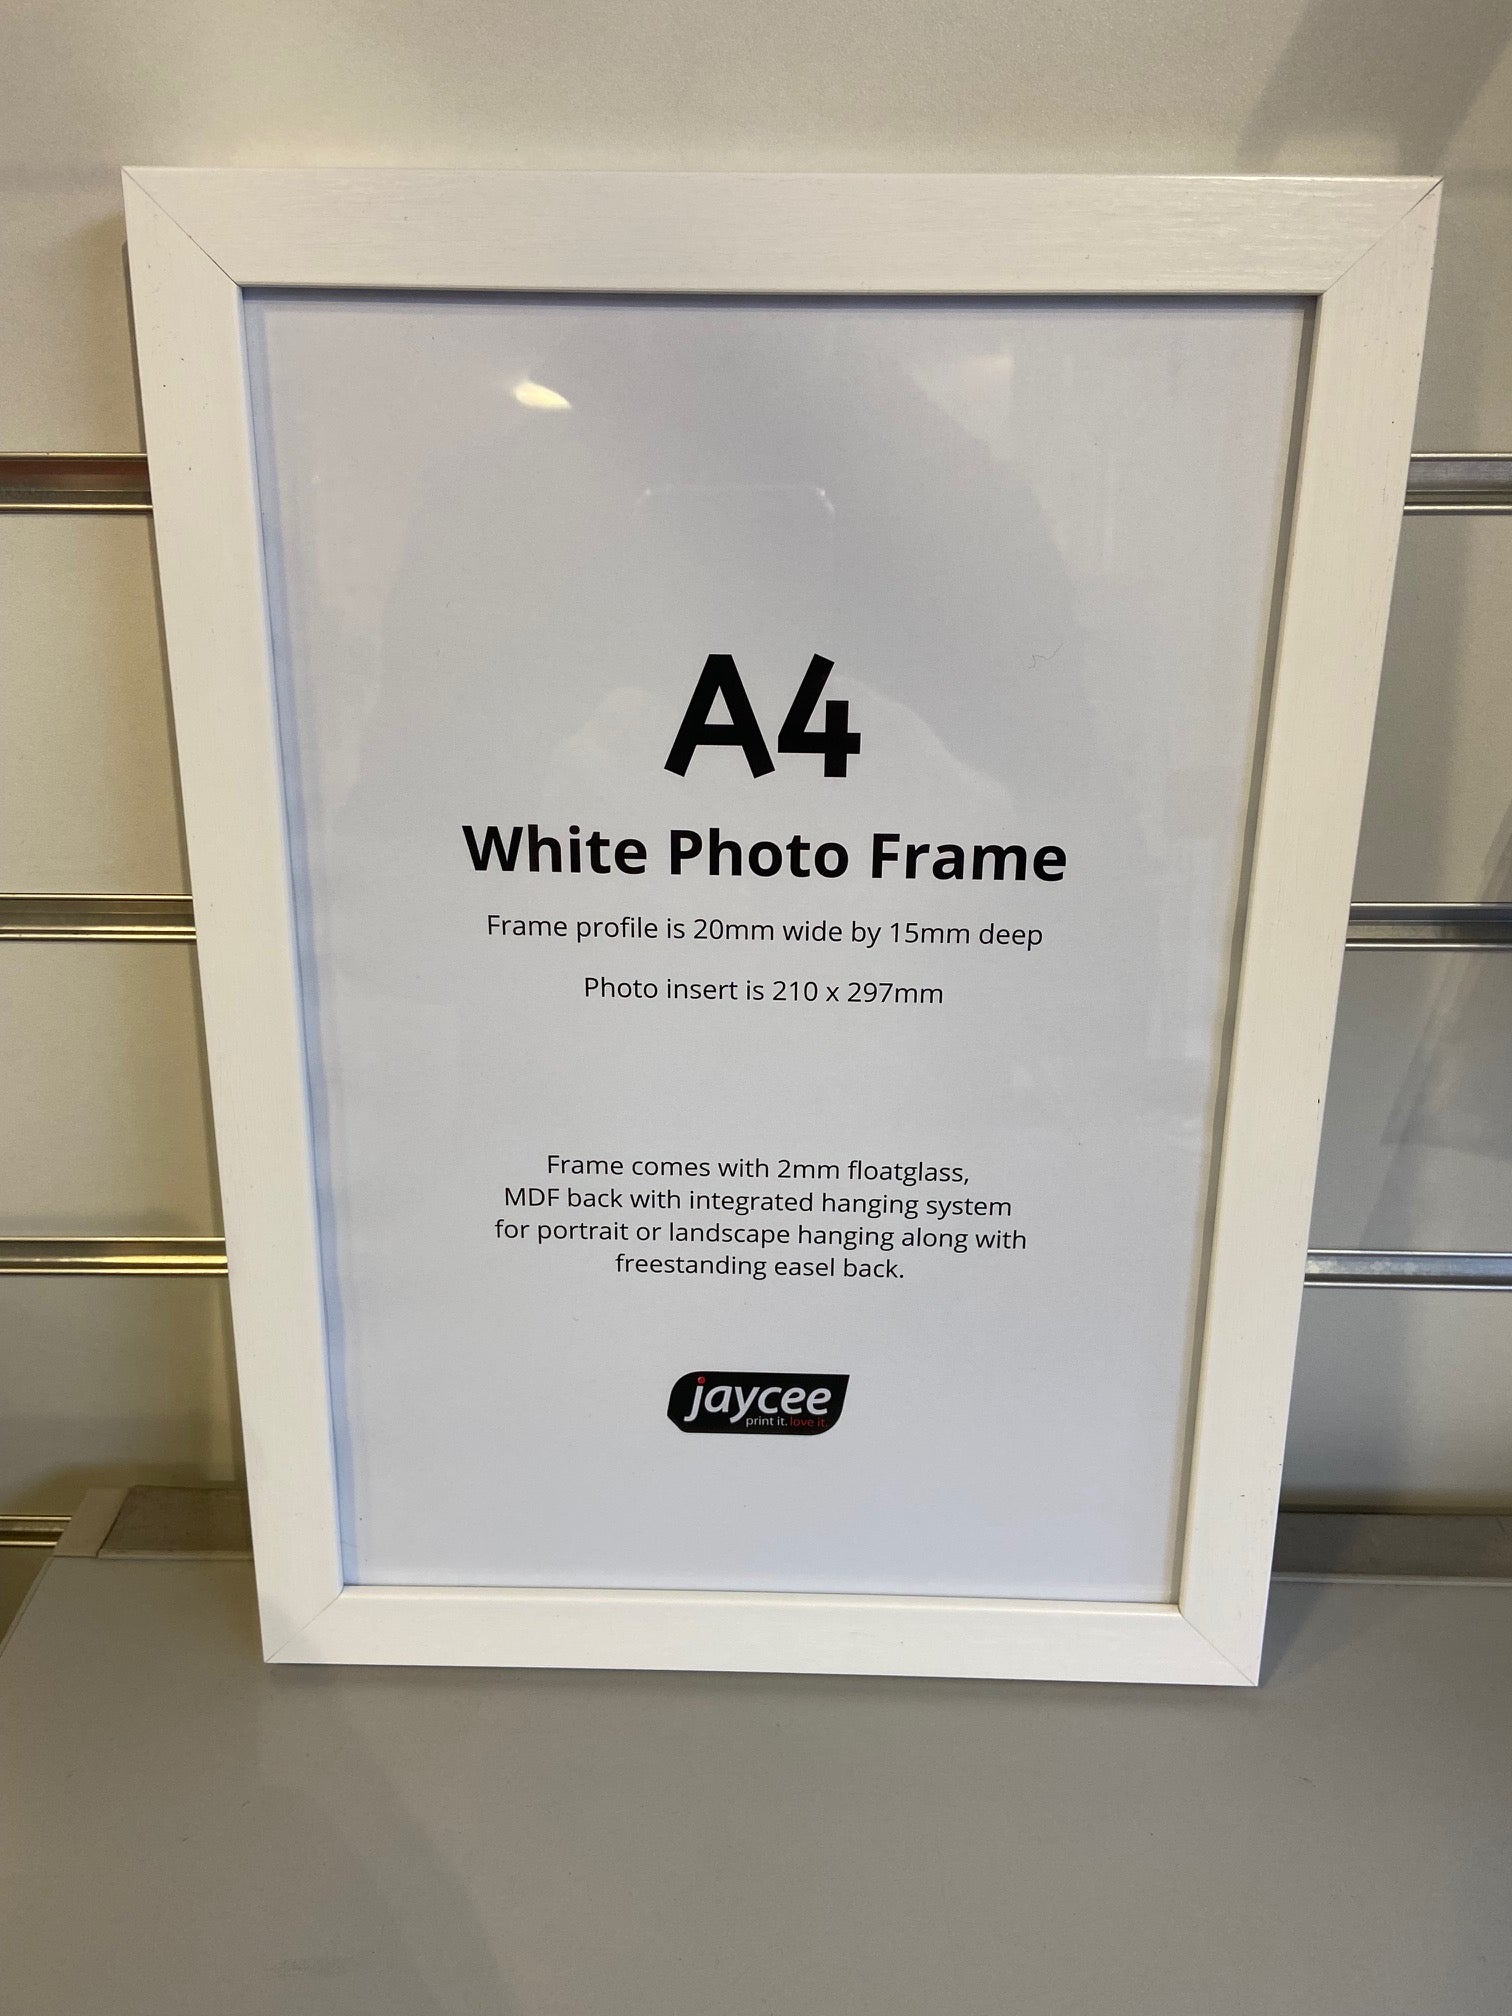 A4 White Photo Frame - Jaycee